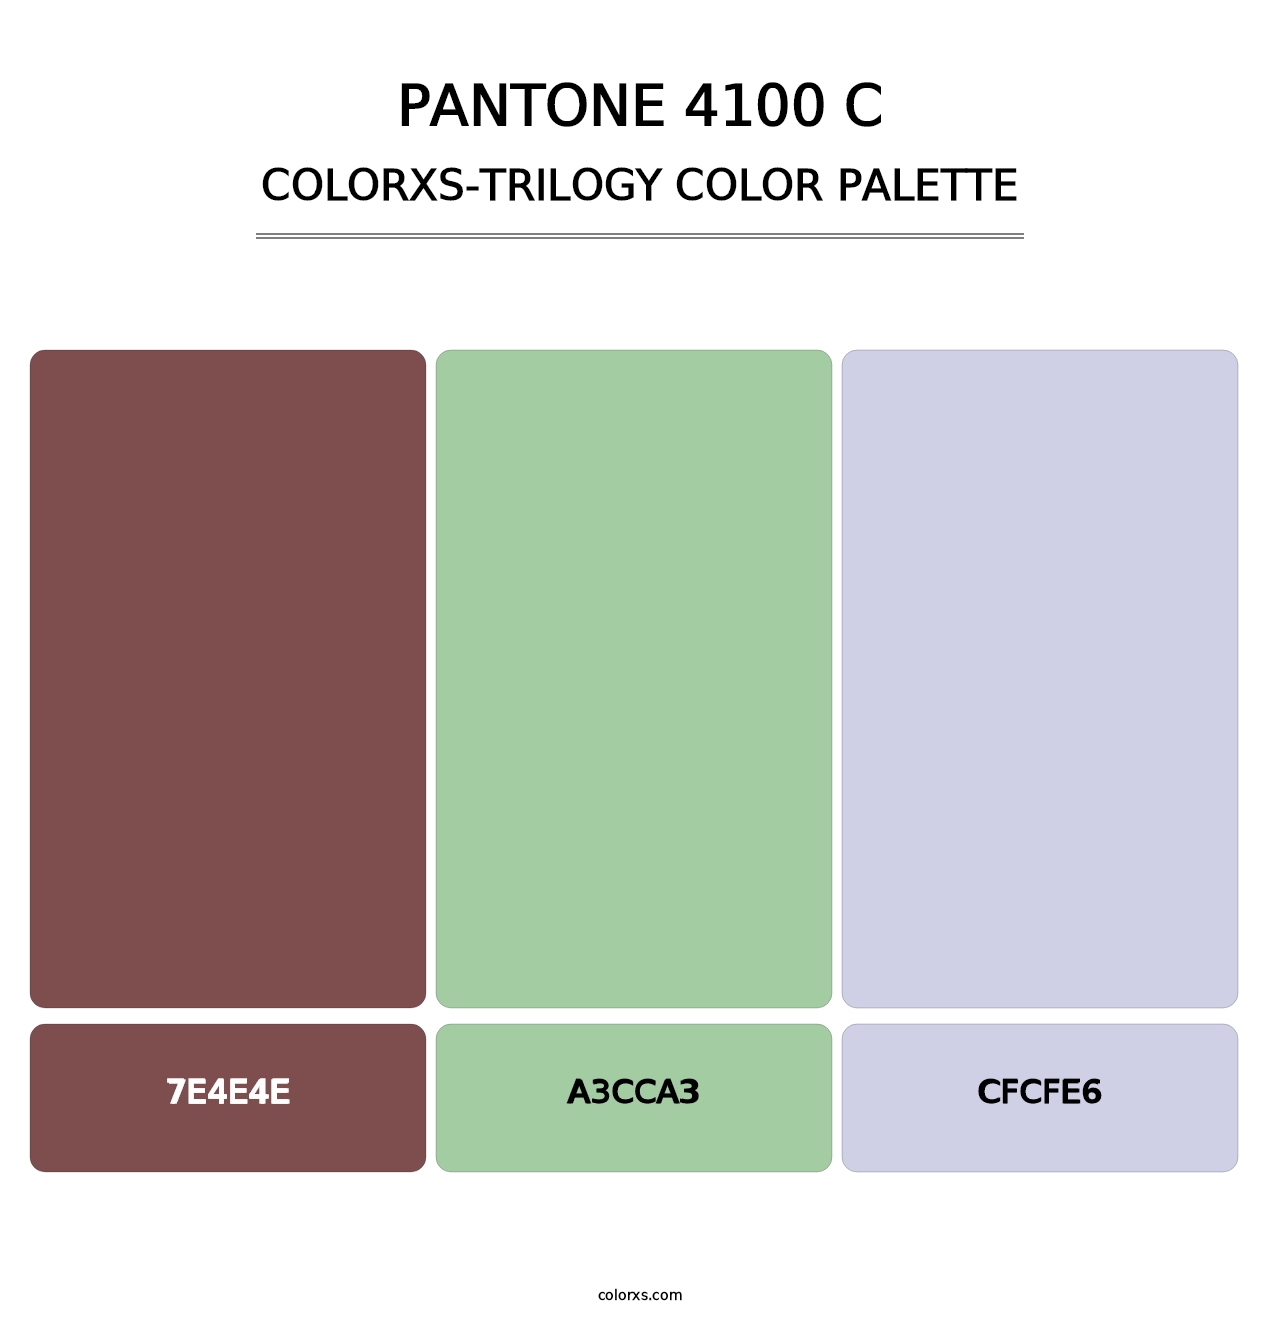 PANTONE 4100 C - Colorxs Trilogy Palette